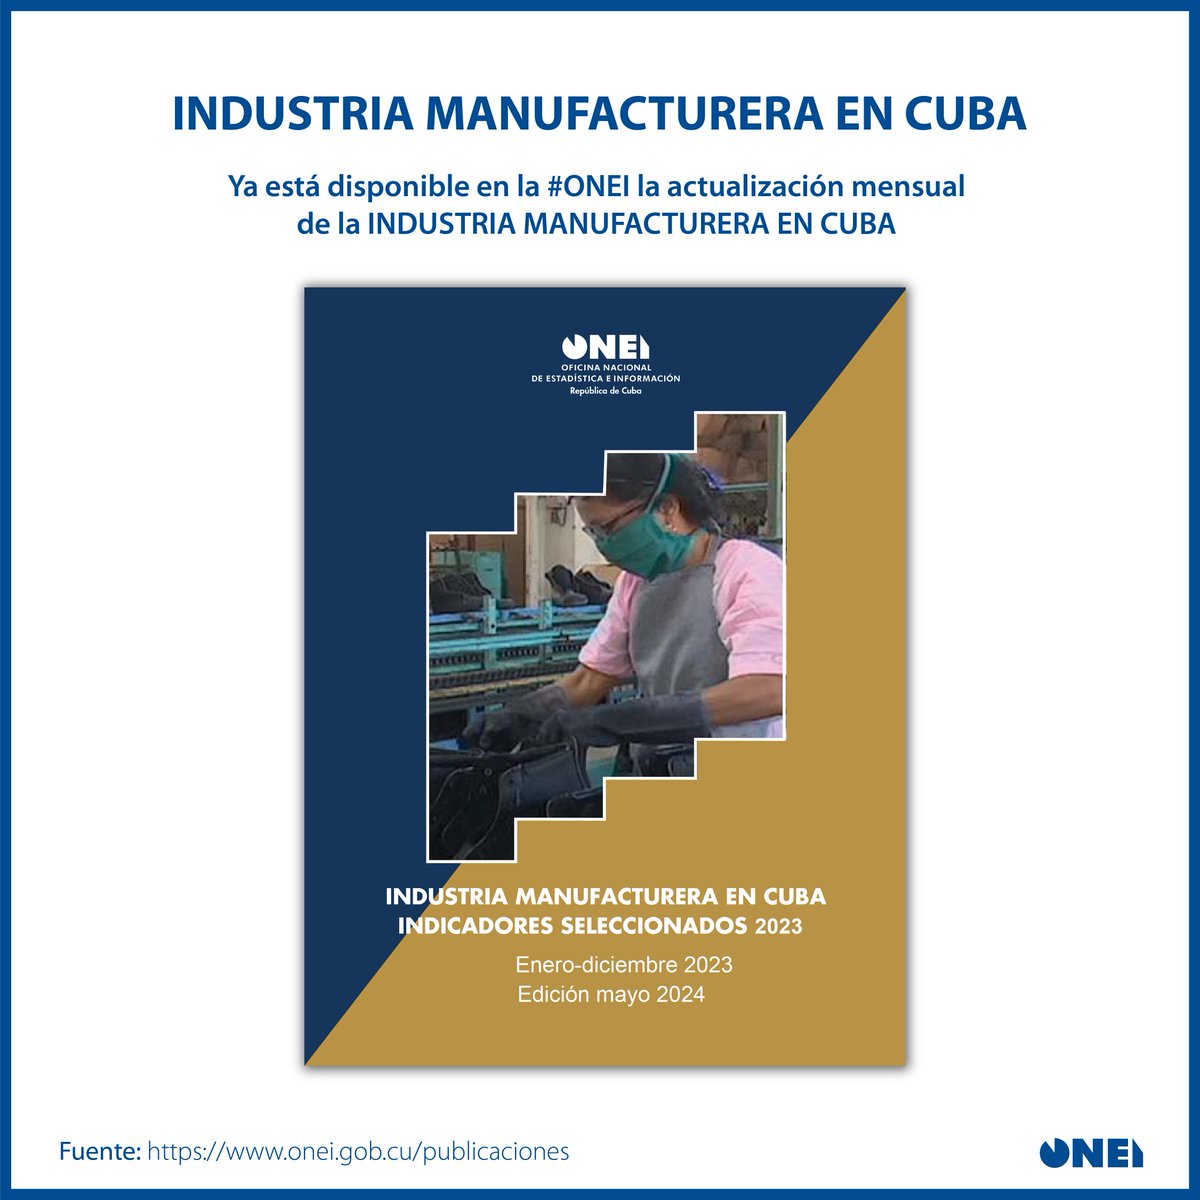 📢 Ya disponible la publicación Industria Manufacturera en Cuba. Indicadores Seleccionados 2023, edición mayo 2024. 📋Puede acceder a ella a través del enlace: onei.gob.cu/publicaciones